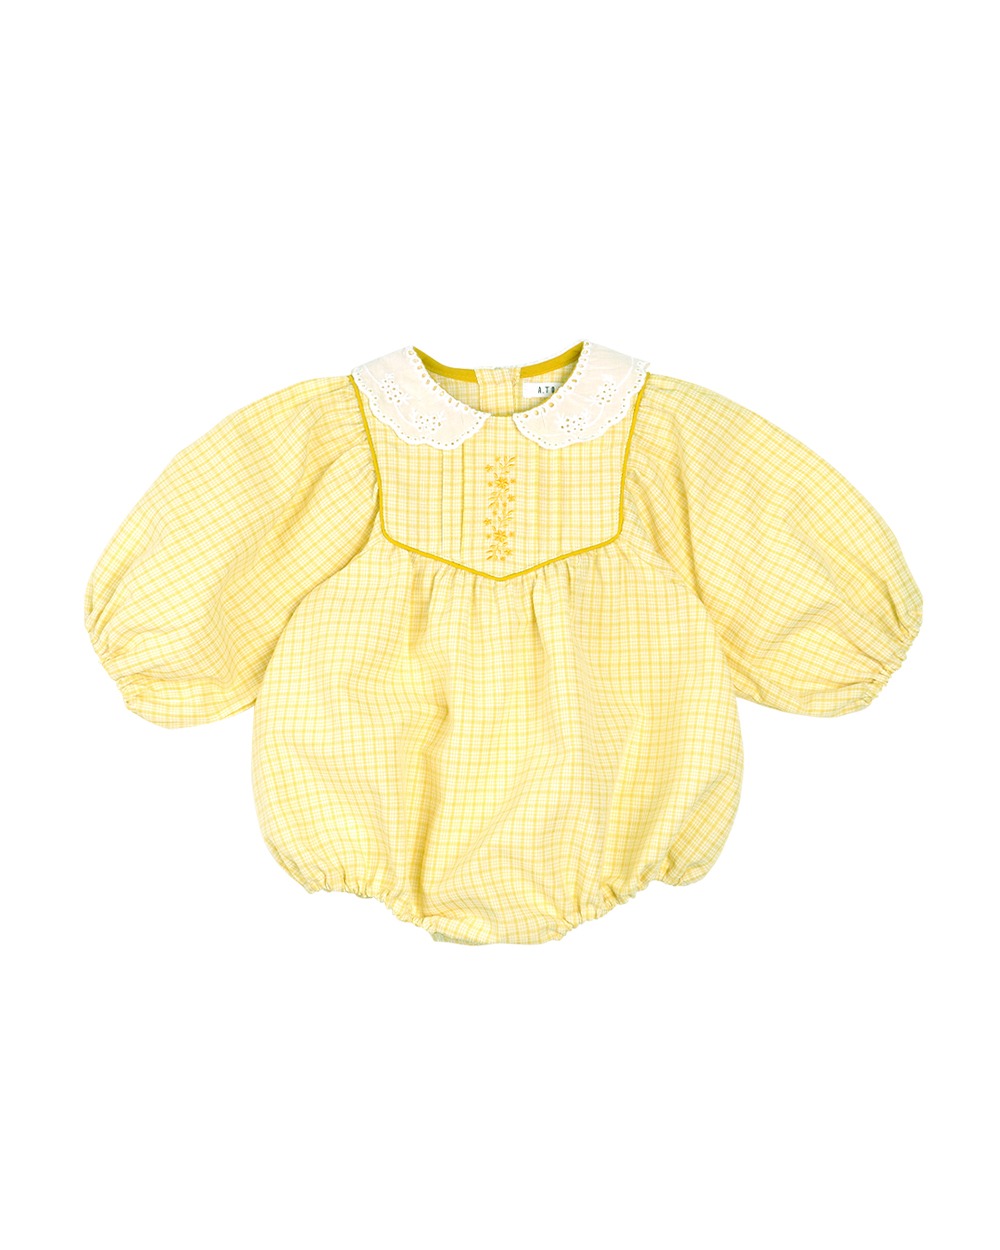 타임특가 [a.toi baby] April Check Bodysuit Yellow - 마르마르